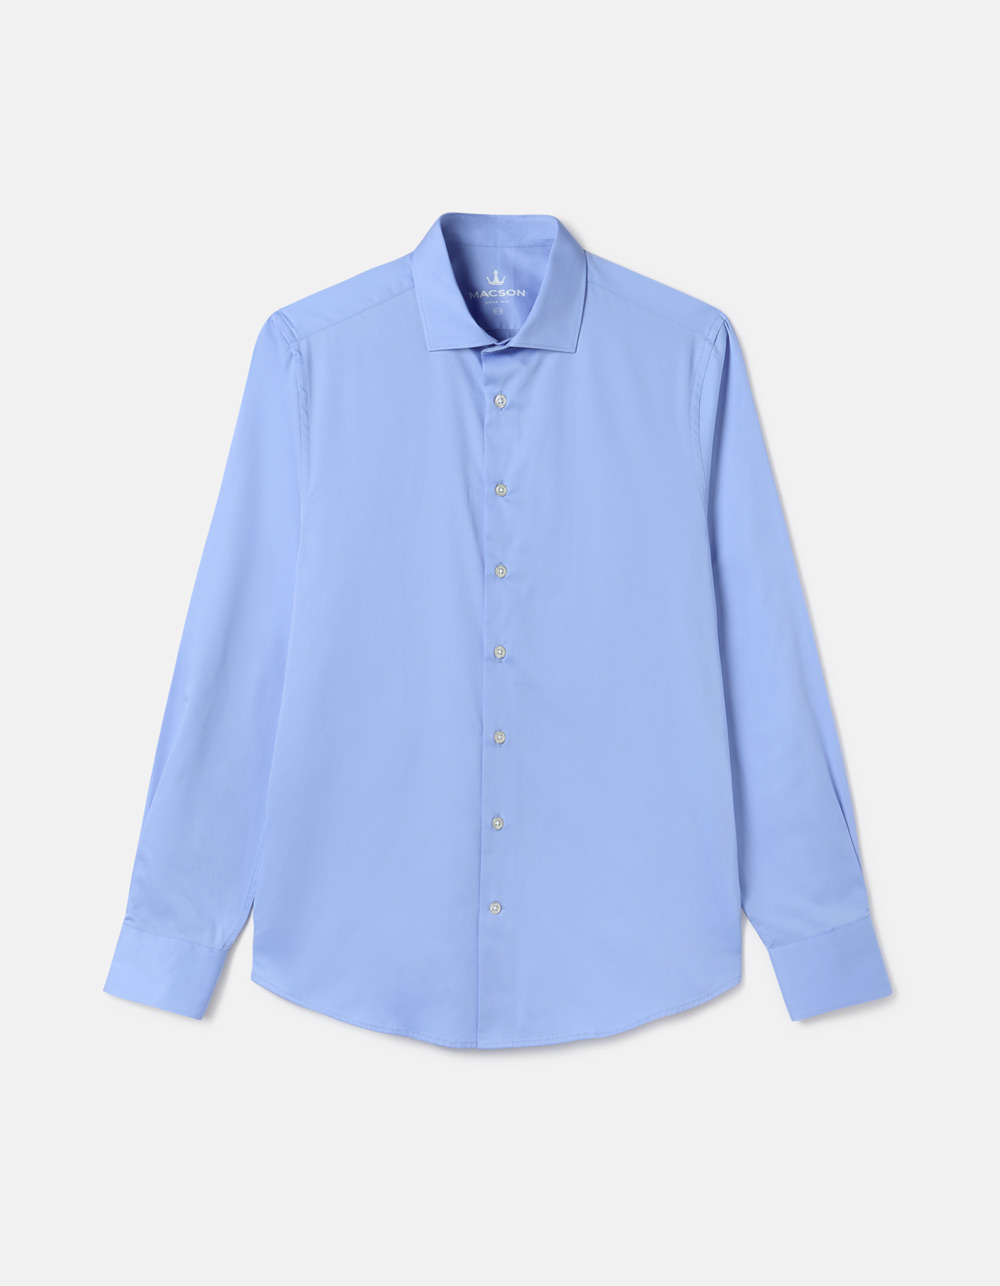 Plain blue shirt